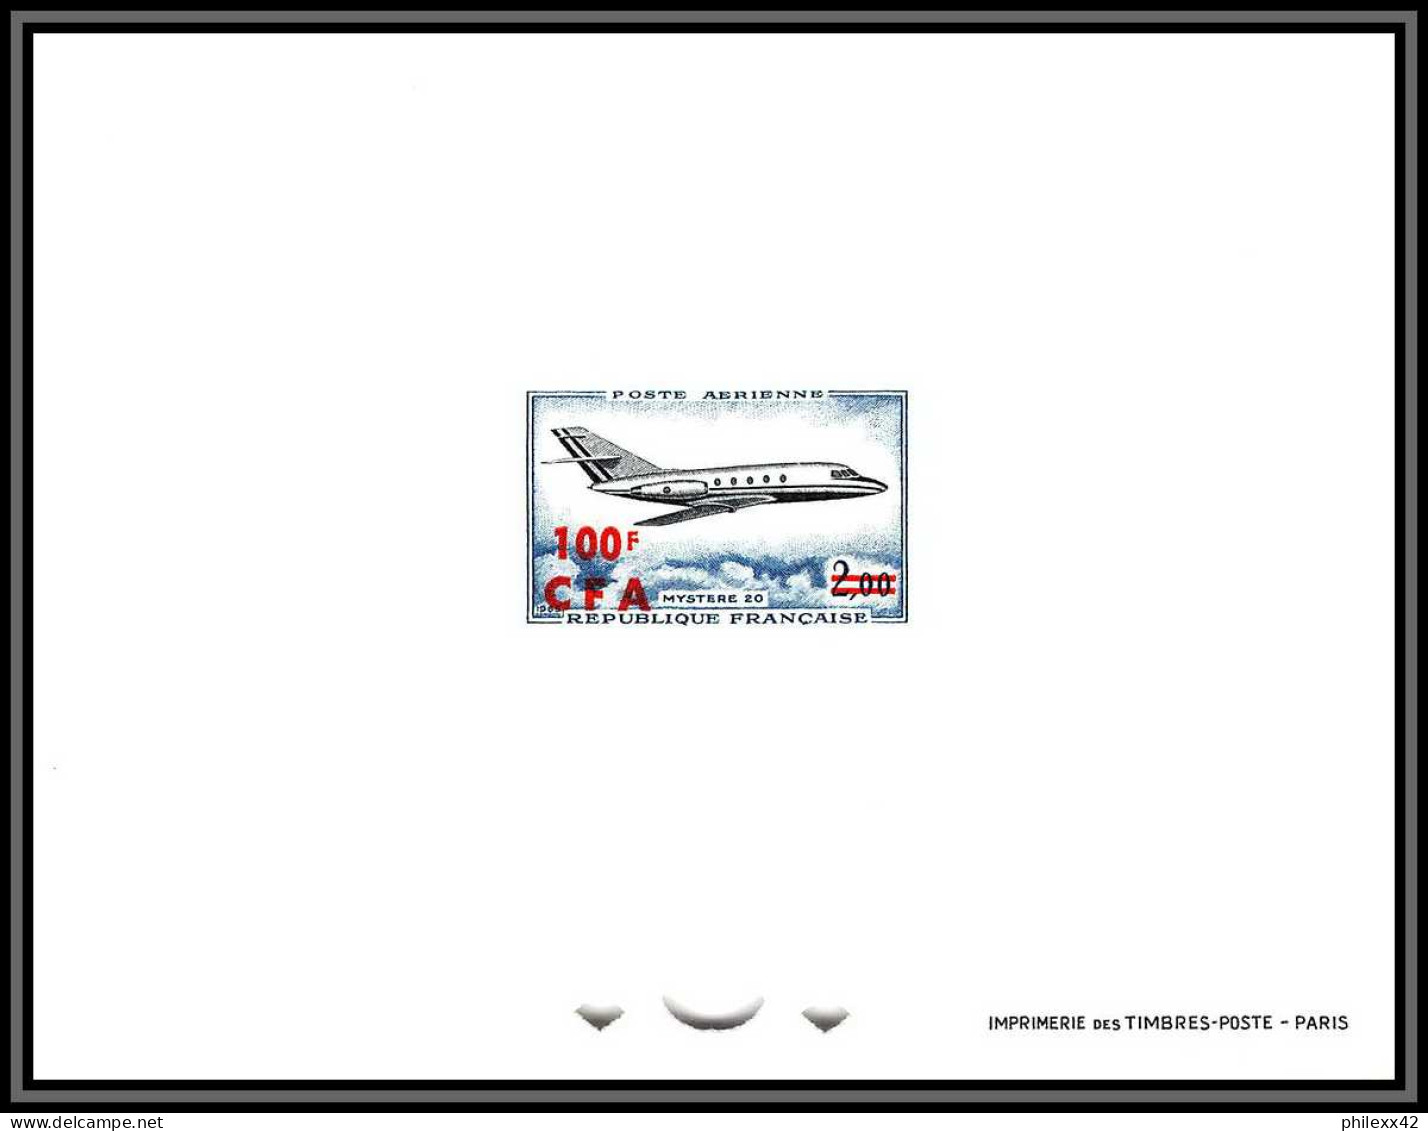 France / Cfa Reunion PA Poste Aerienne N°61 Mystere 20 Pa 42 épreuve De Luxe (deluxe Proof) - Aéreo